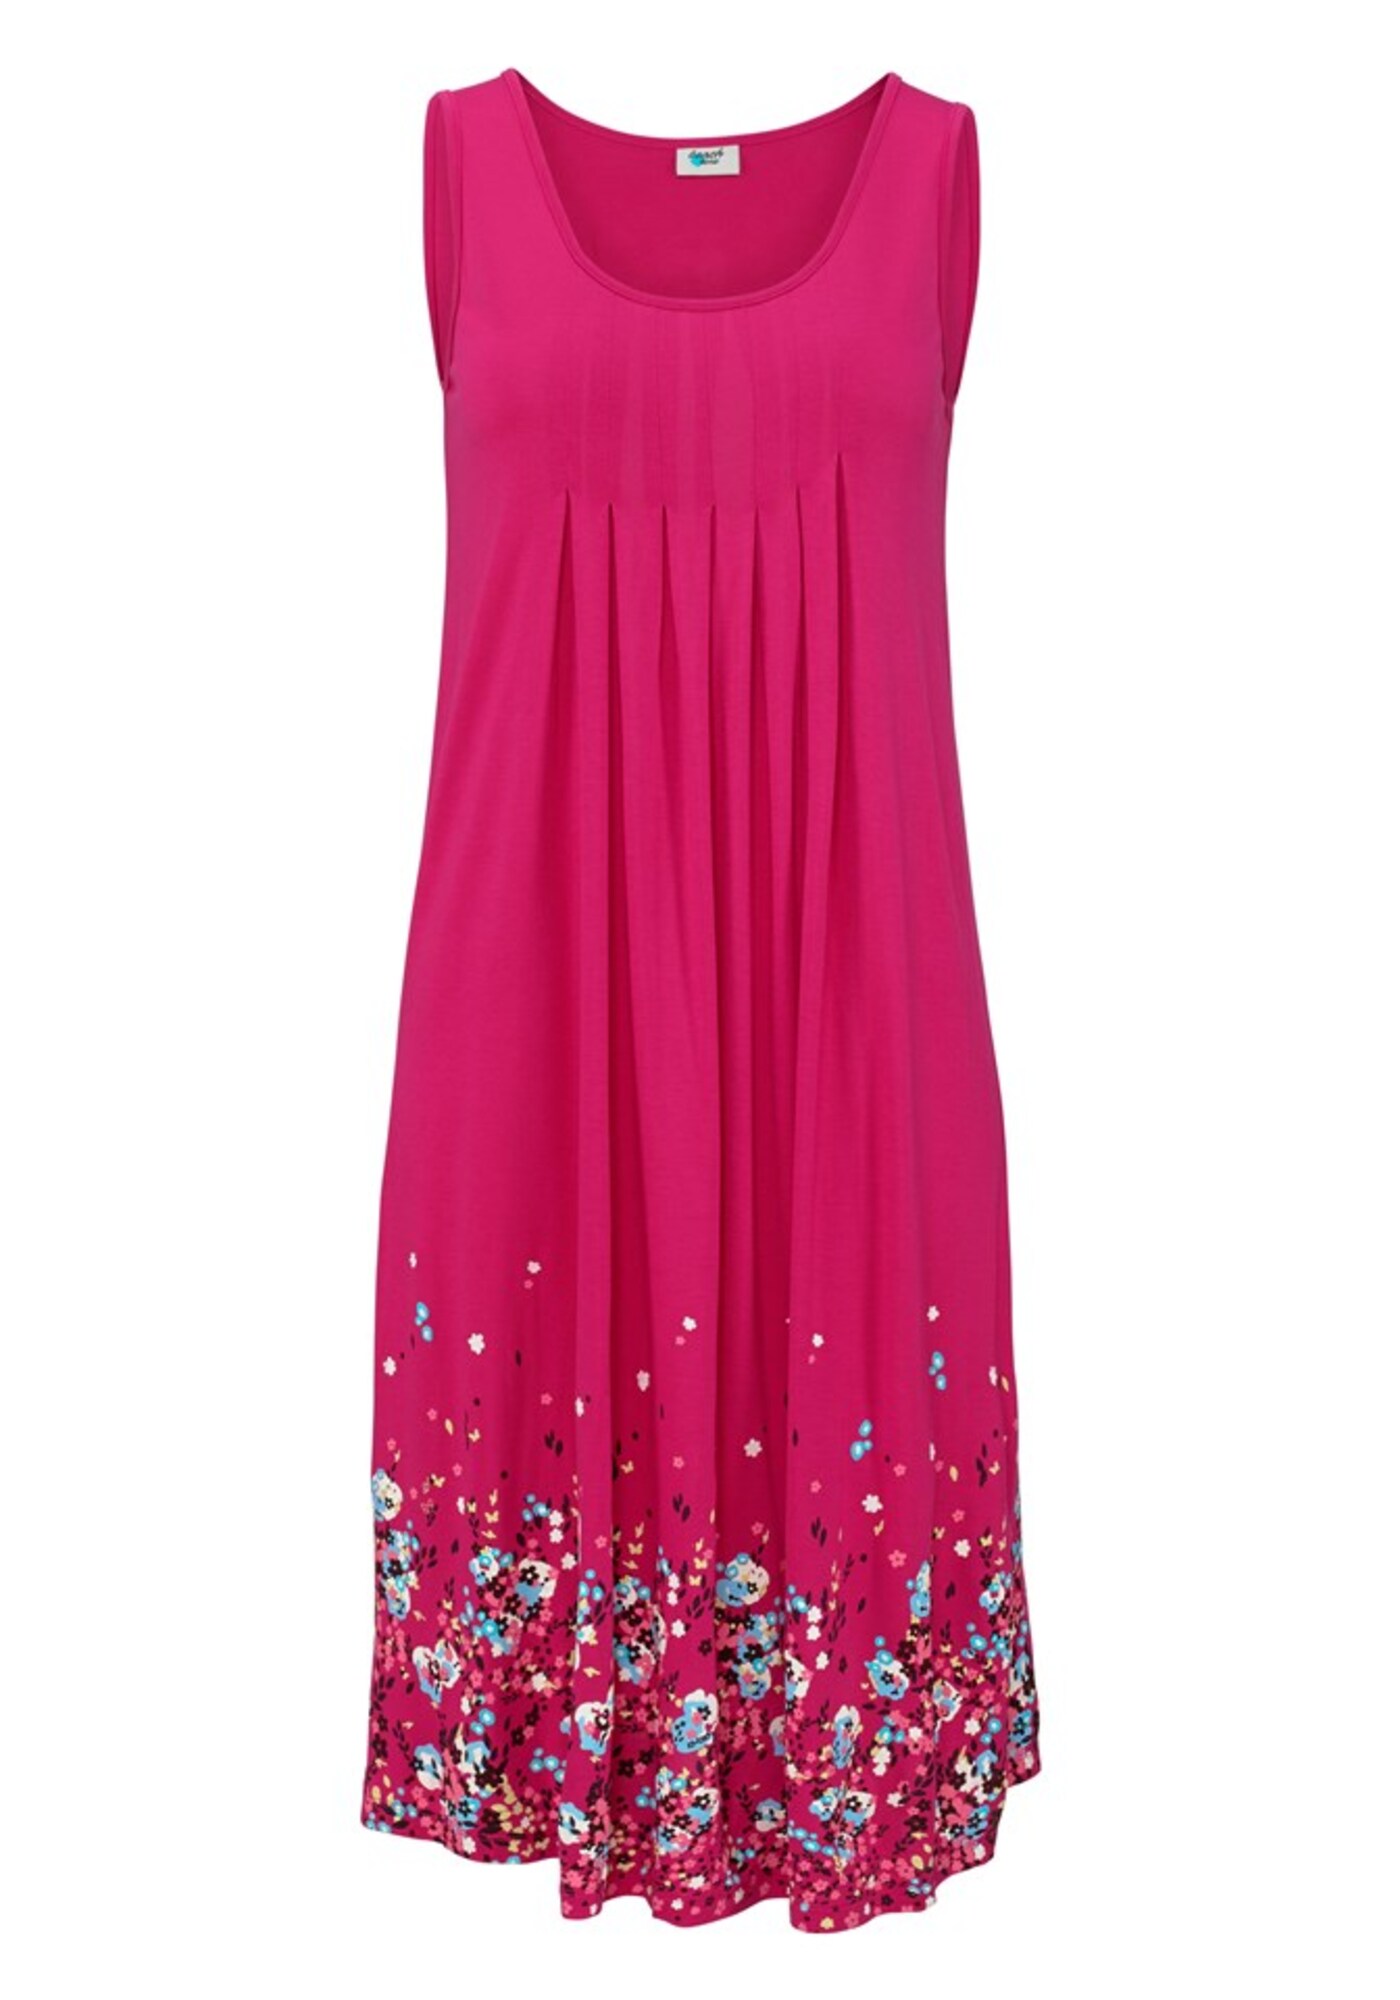 BEACH TIME Vasarinė suknelė  mišrios spalvos / rožinė